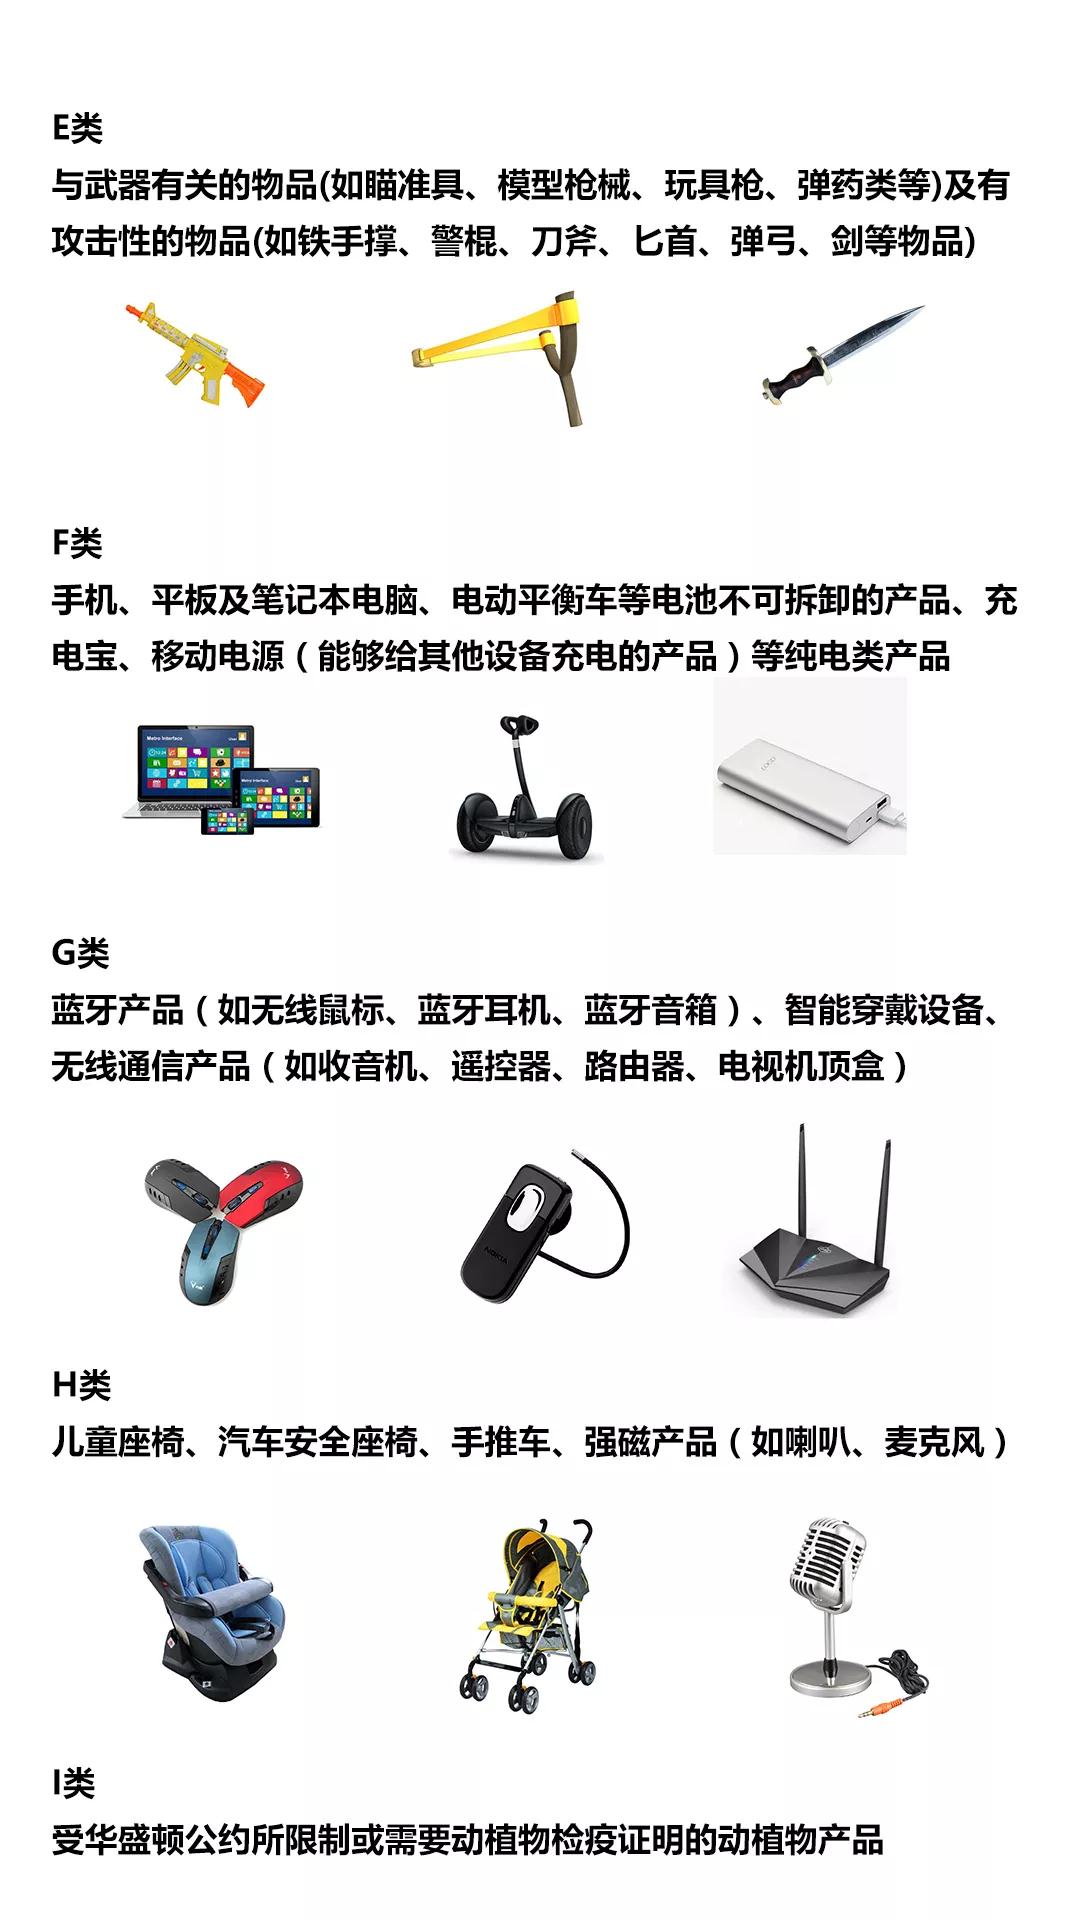 蓝牙设备不可寄送 | 台湾SLS物流渠道禁运品类